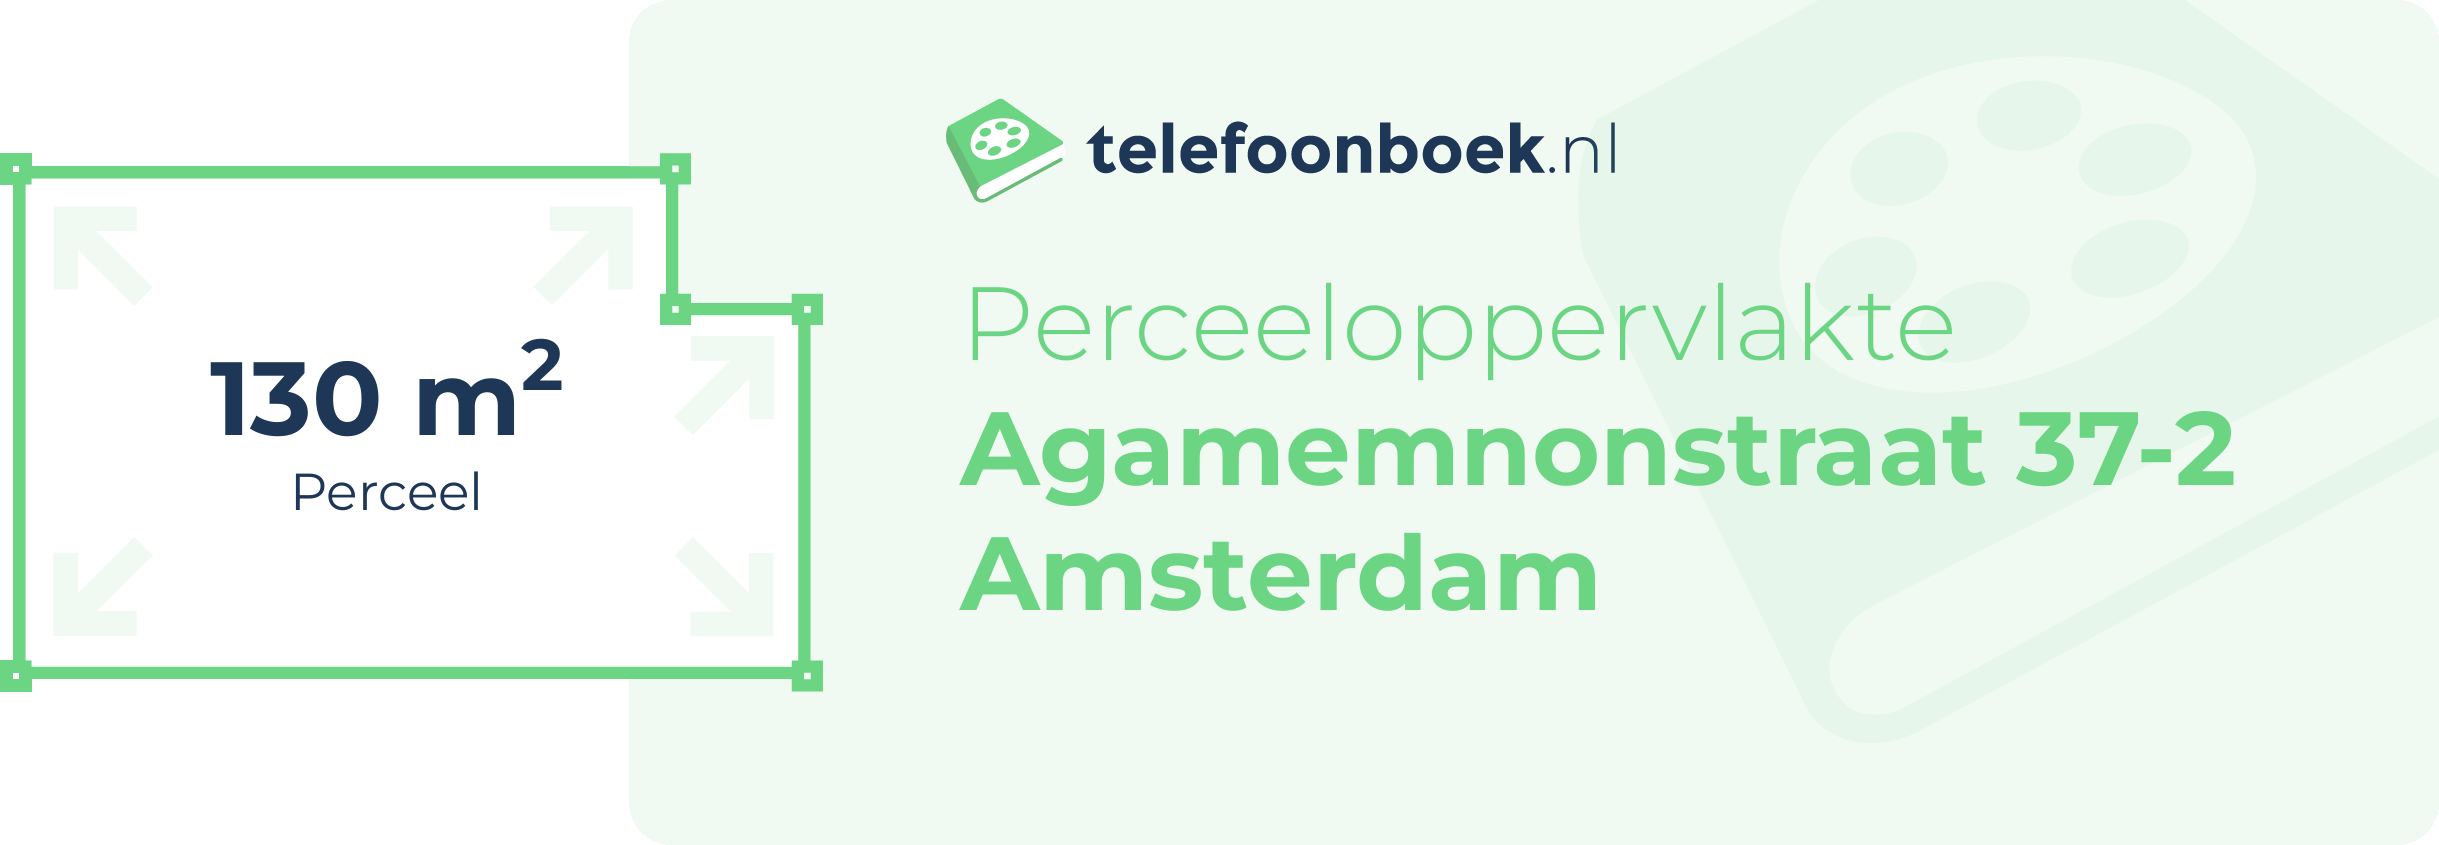 Perceeloppervlakte Agamemnonstraat 37-2 Amsterdam